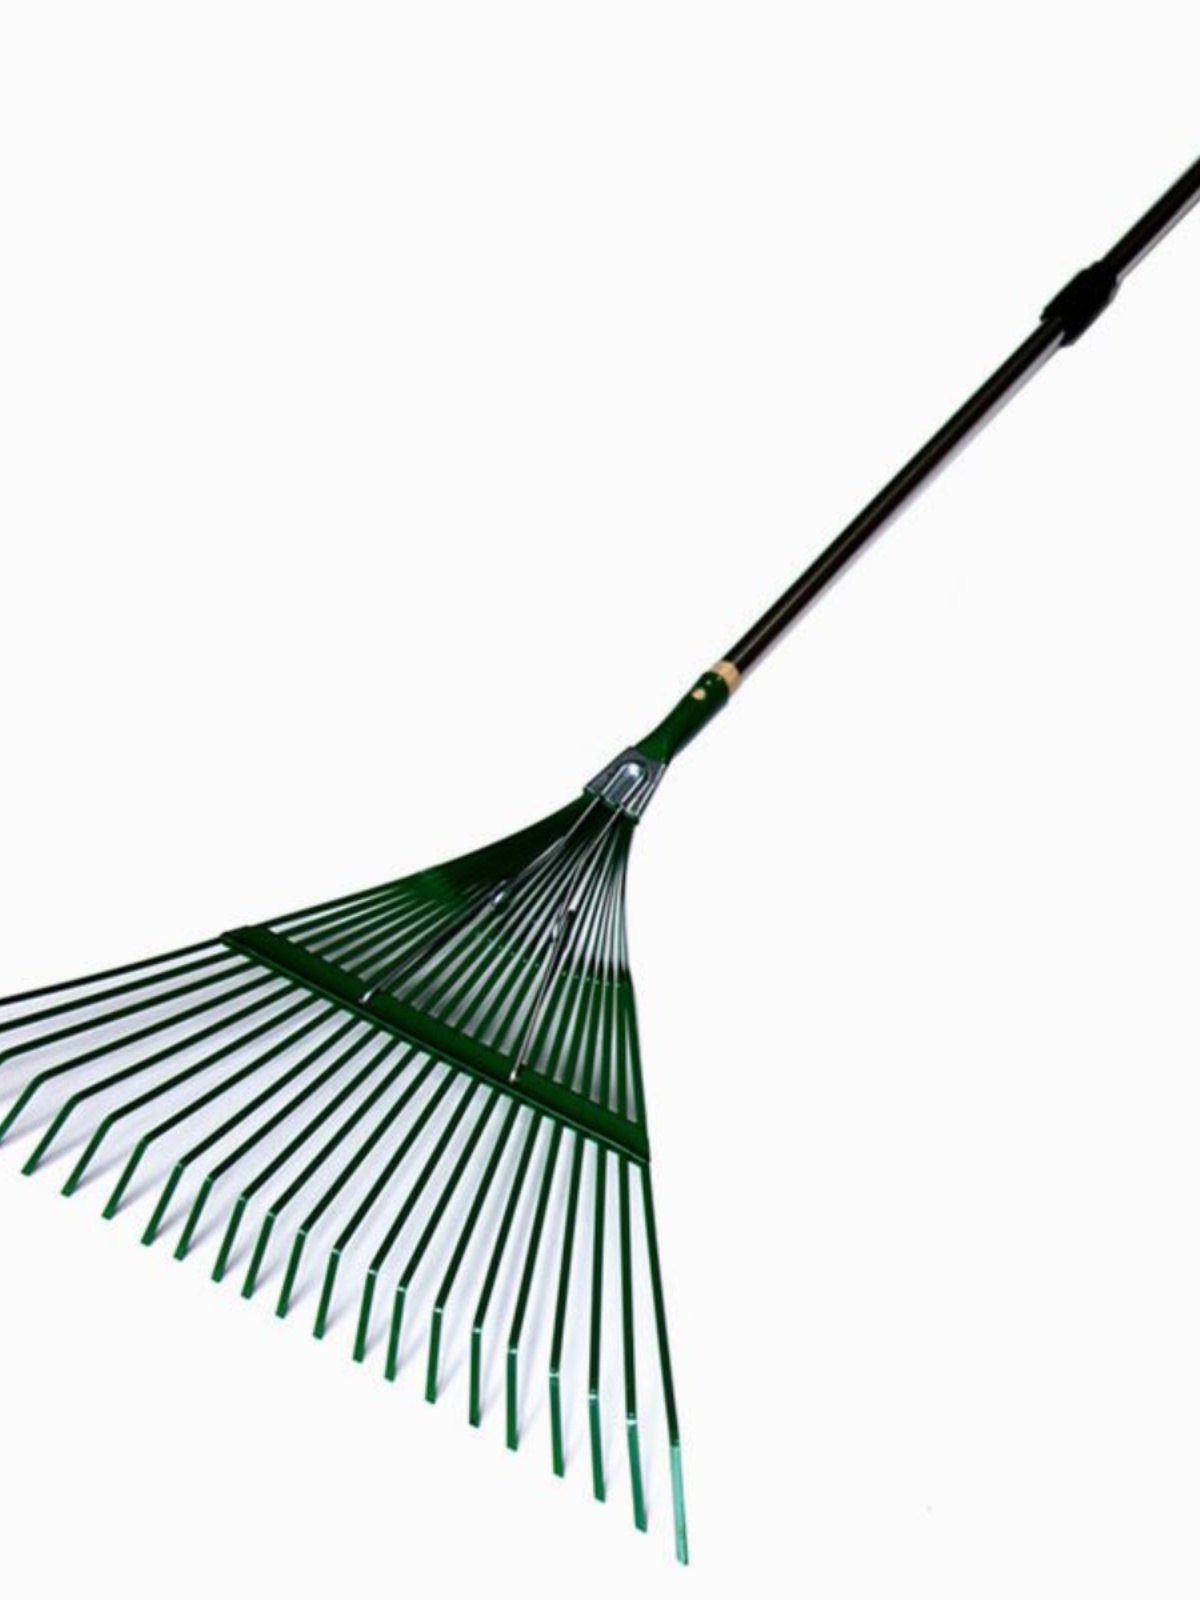 草耙子搂土松树打扫花园家用清洁枯枝草坪清扫树叶子铁扒草扒枯叶